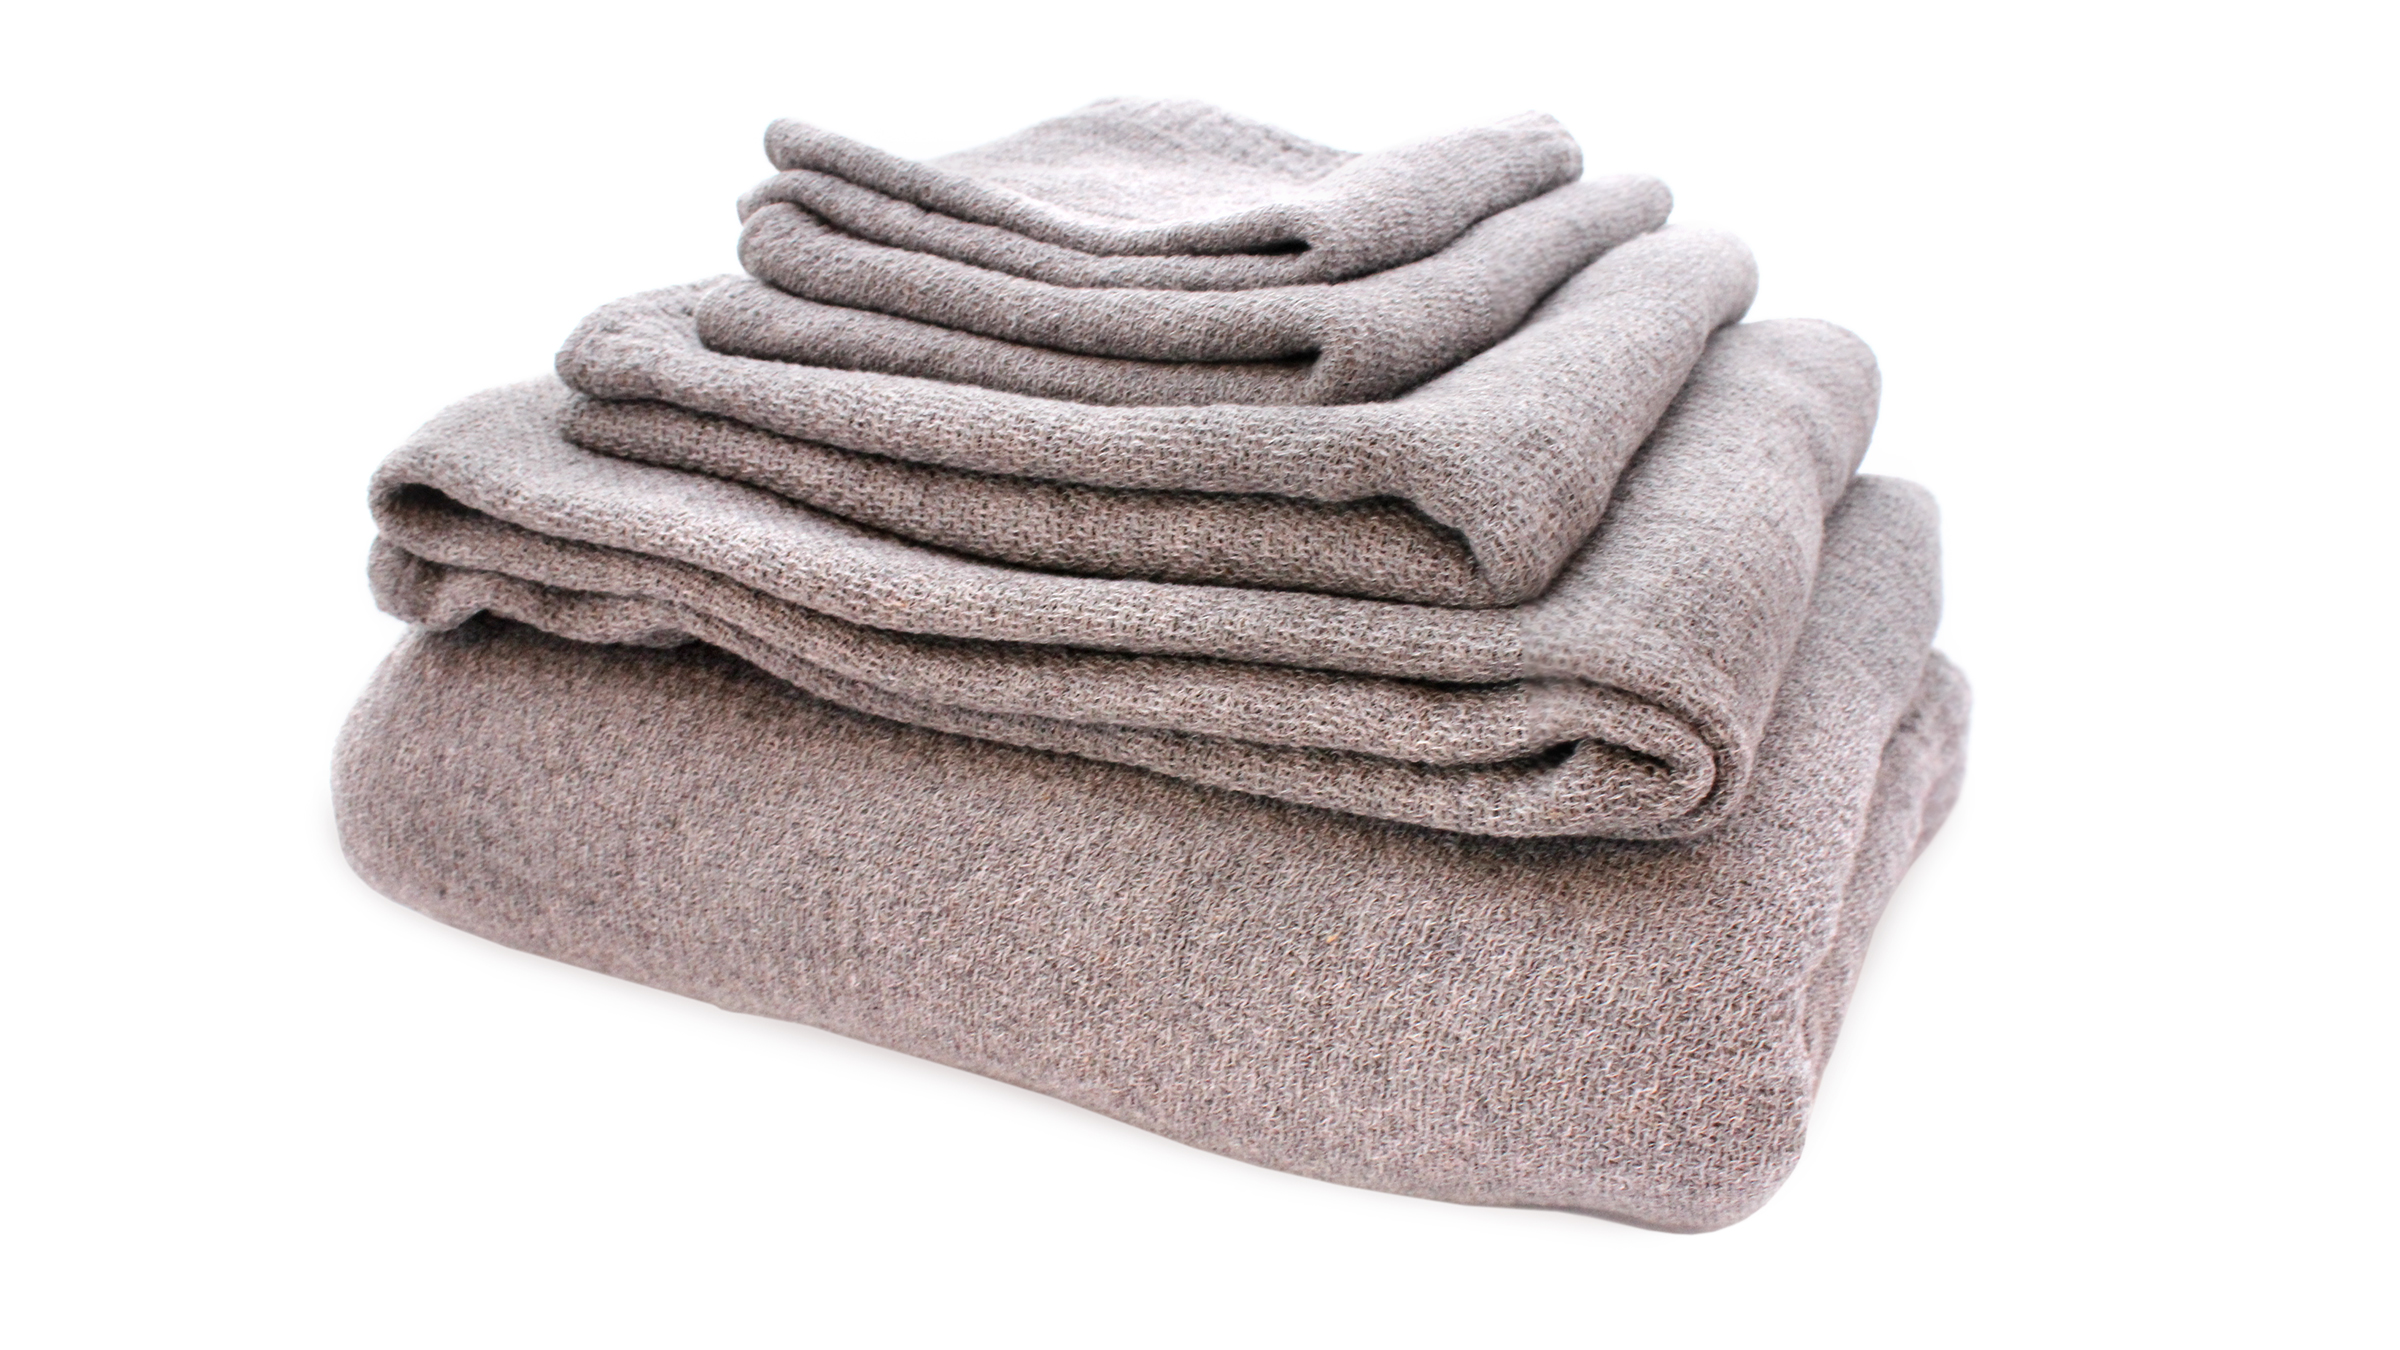 Morihata-Lana-Towel-Set-items-16x9.jpg